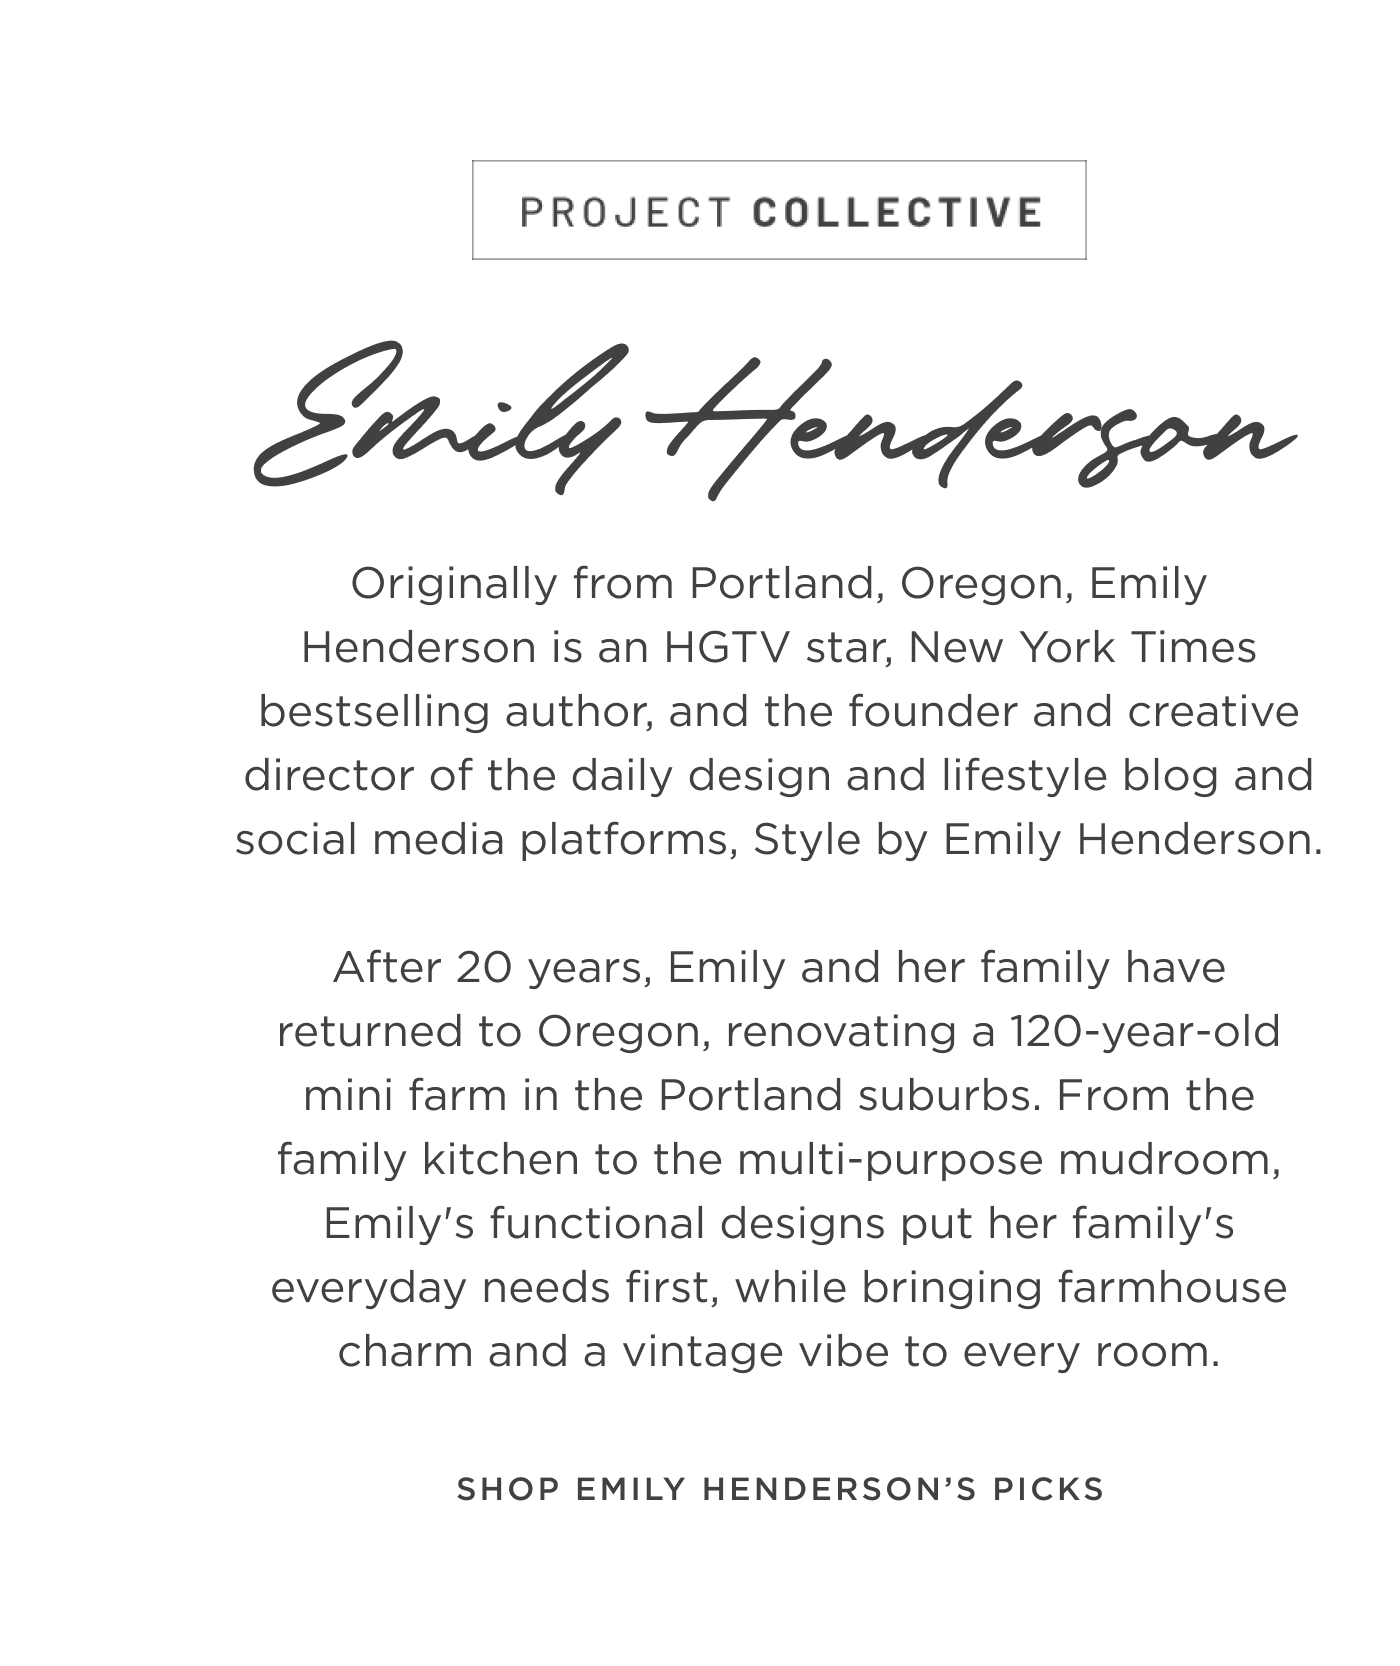 Shop Emily Henderson's picks